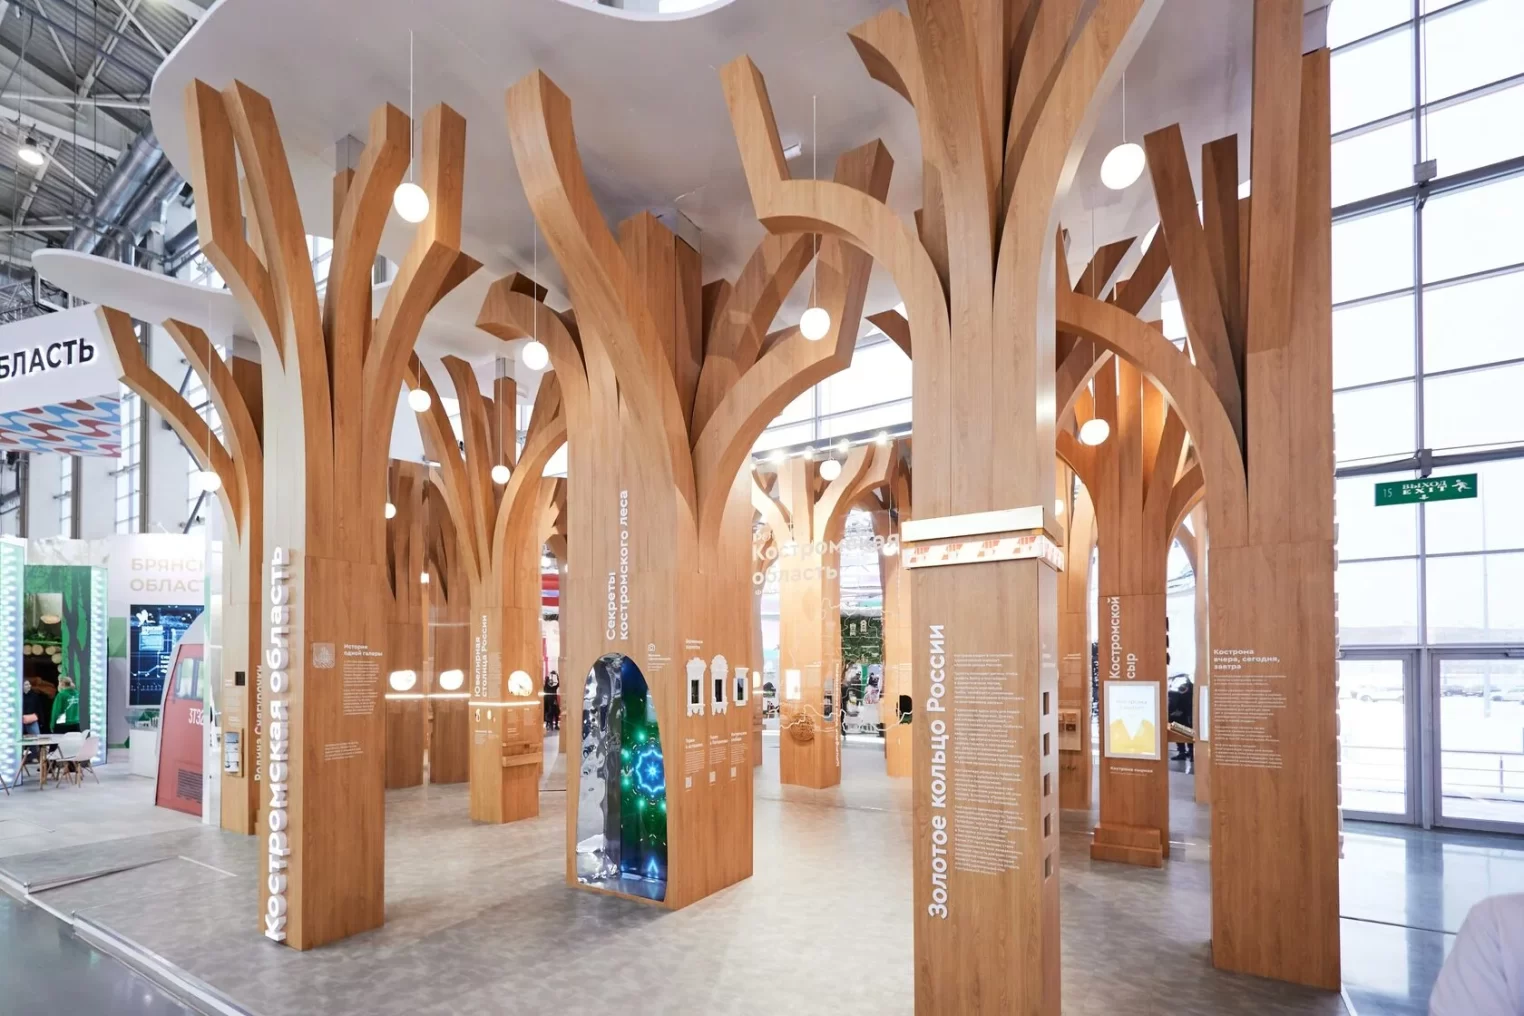 Стенд Костромской области из 9 деревьев на выставке "Россия" придумали москвичи